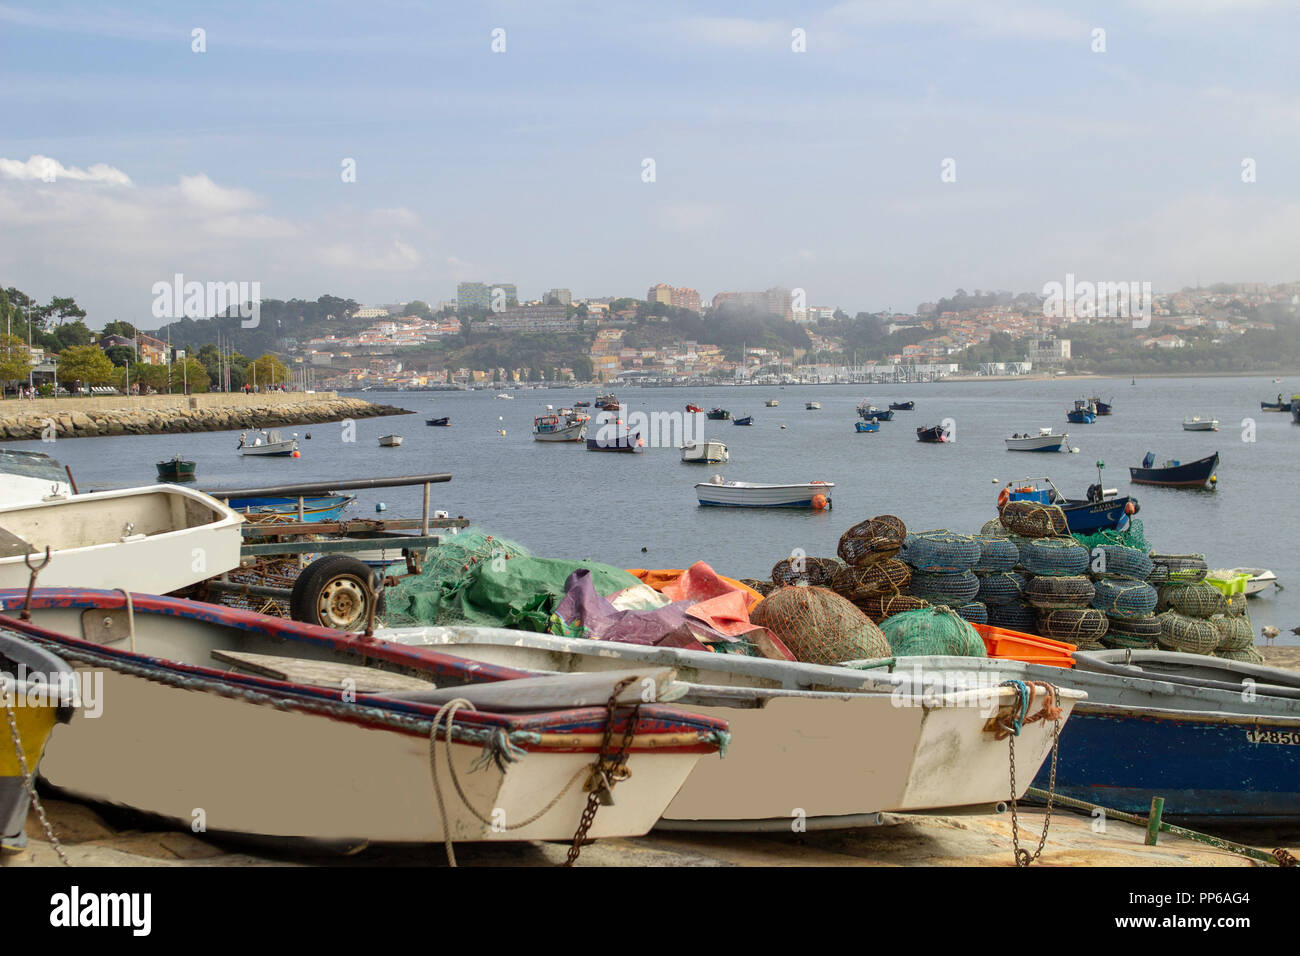 Porto, Portogallo. Piccole barche e attrezzi da pesca sulla banchina e piccole barche ormeggiate nella baia con la città di Porto, Portogallo sullo sfondo. Foto Stock